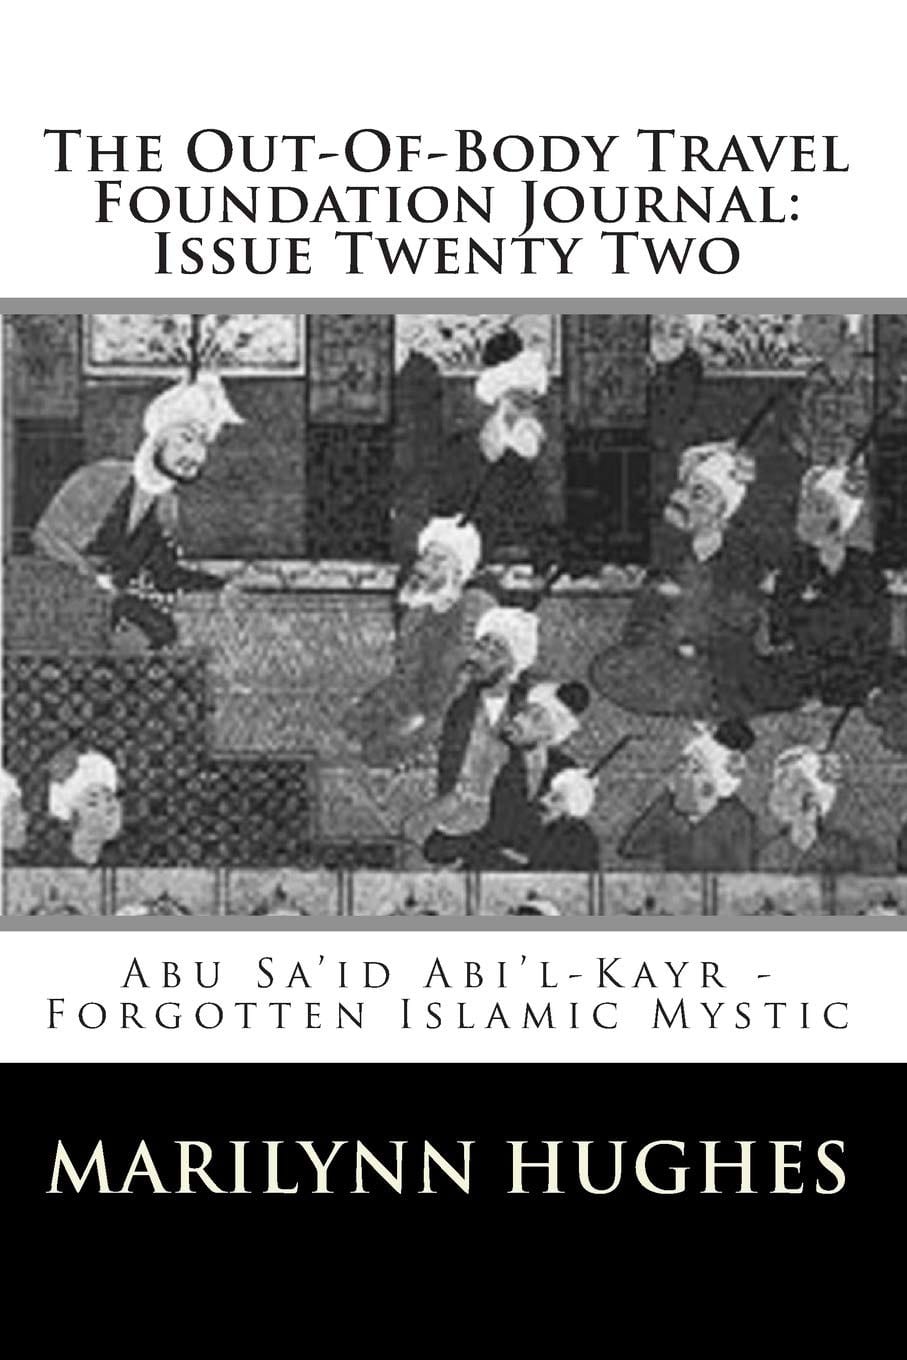 Abu Sa’id Abi’l-Kayr, Forgotten Islamic Mystic, Compiled and Edited by Marilynn Hughes